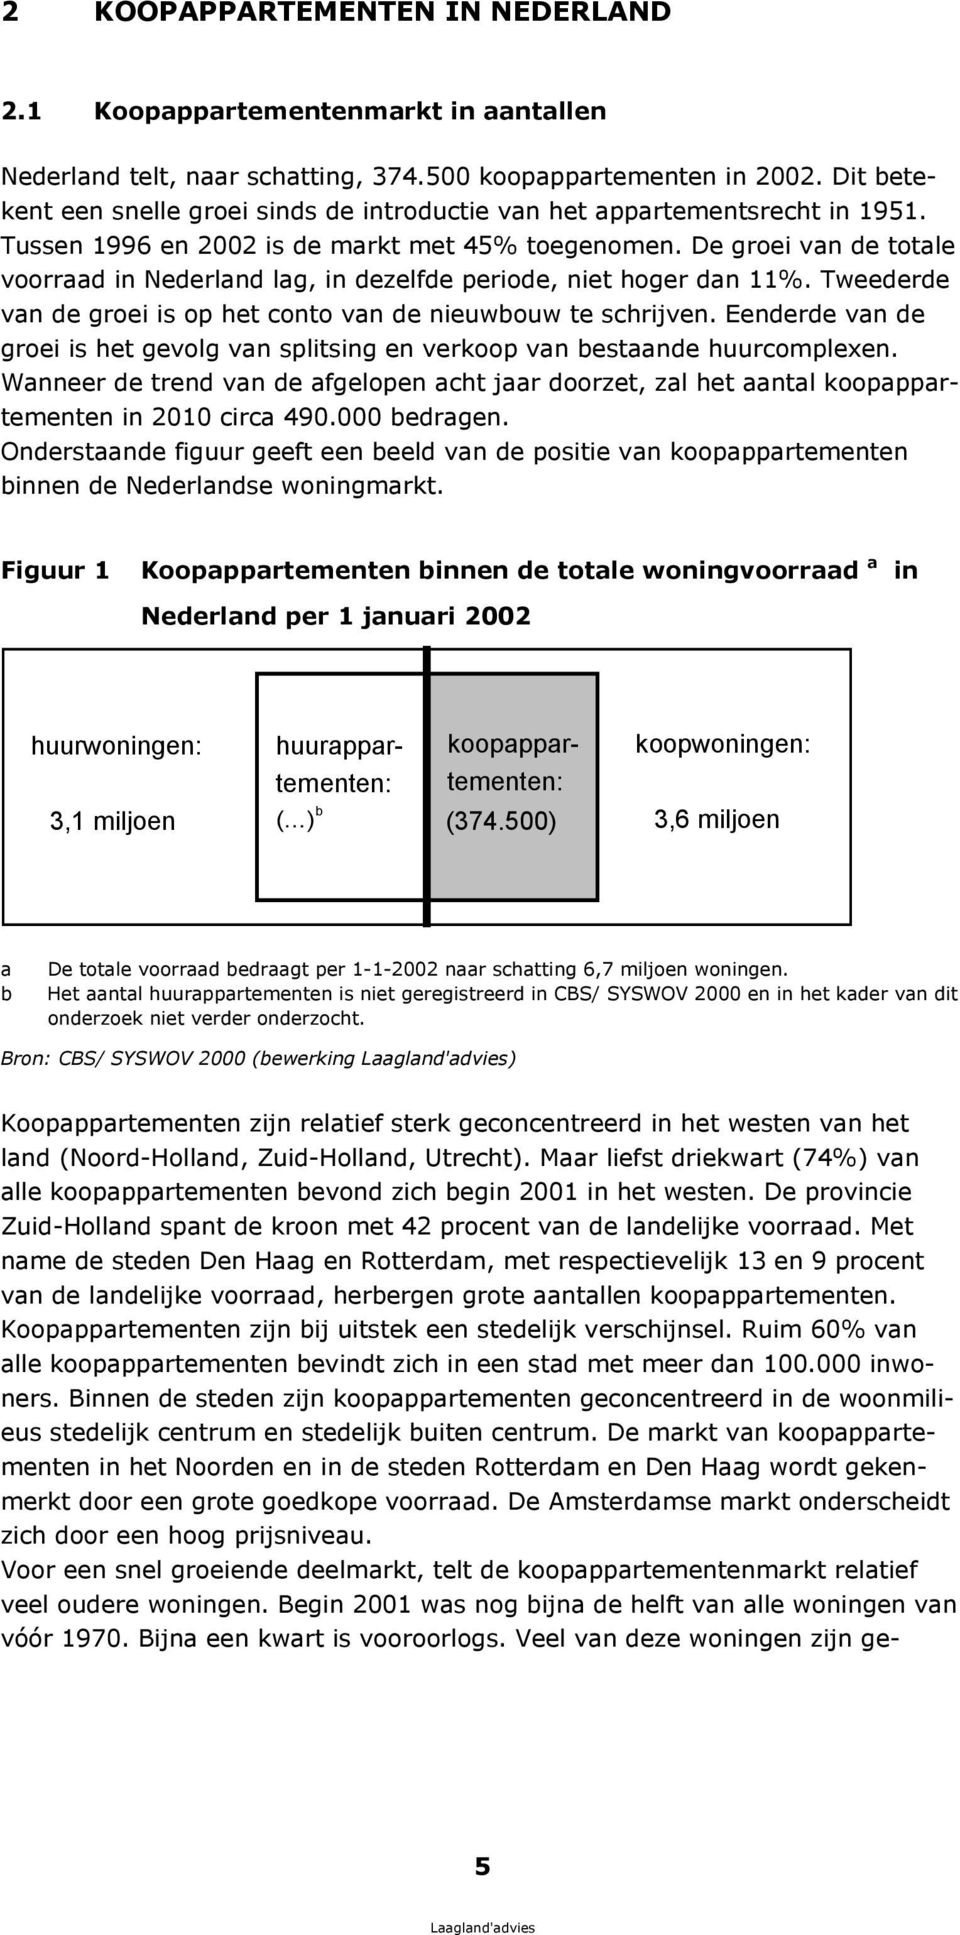 De groei van de totale voorraad in Nederland lag, in dezelfde periode, niet hoger dan 11%. Tweederde van de groei is op het conto van de nieuwbouw te schrijven.